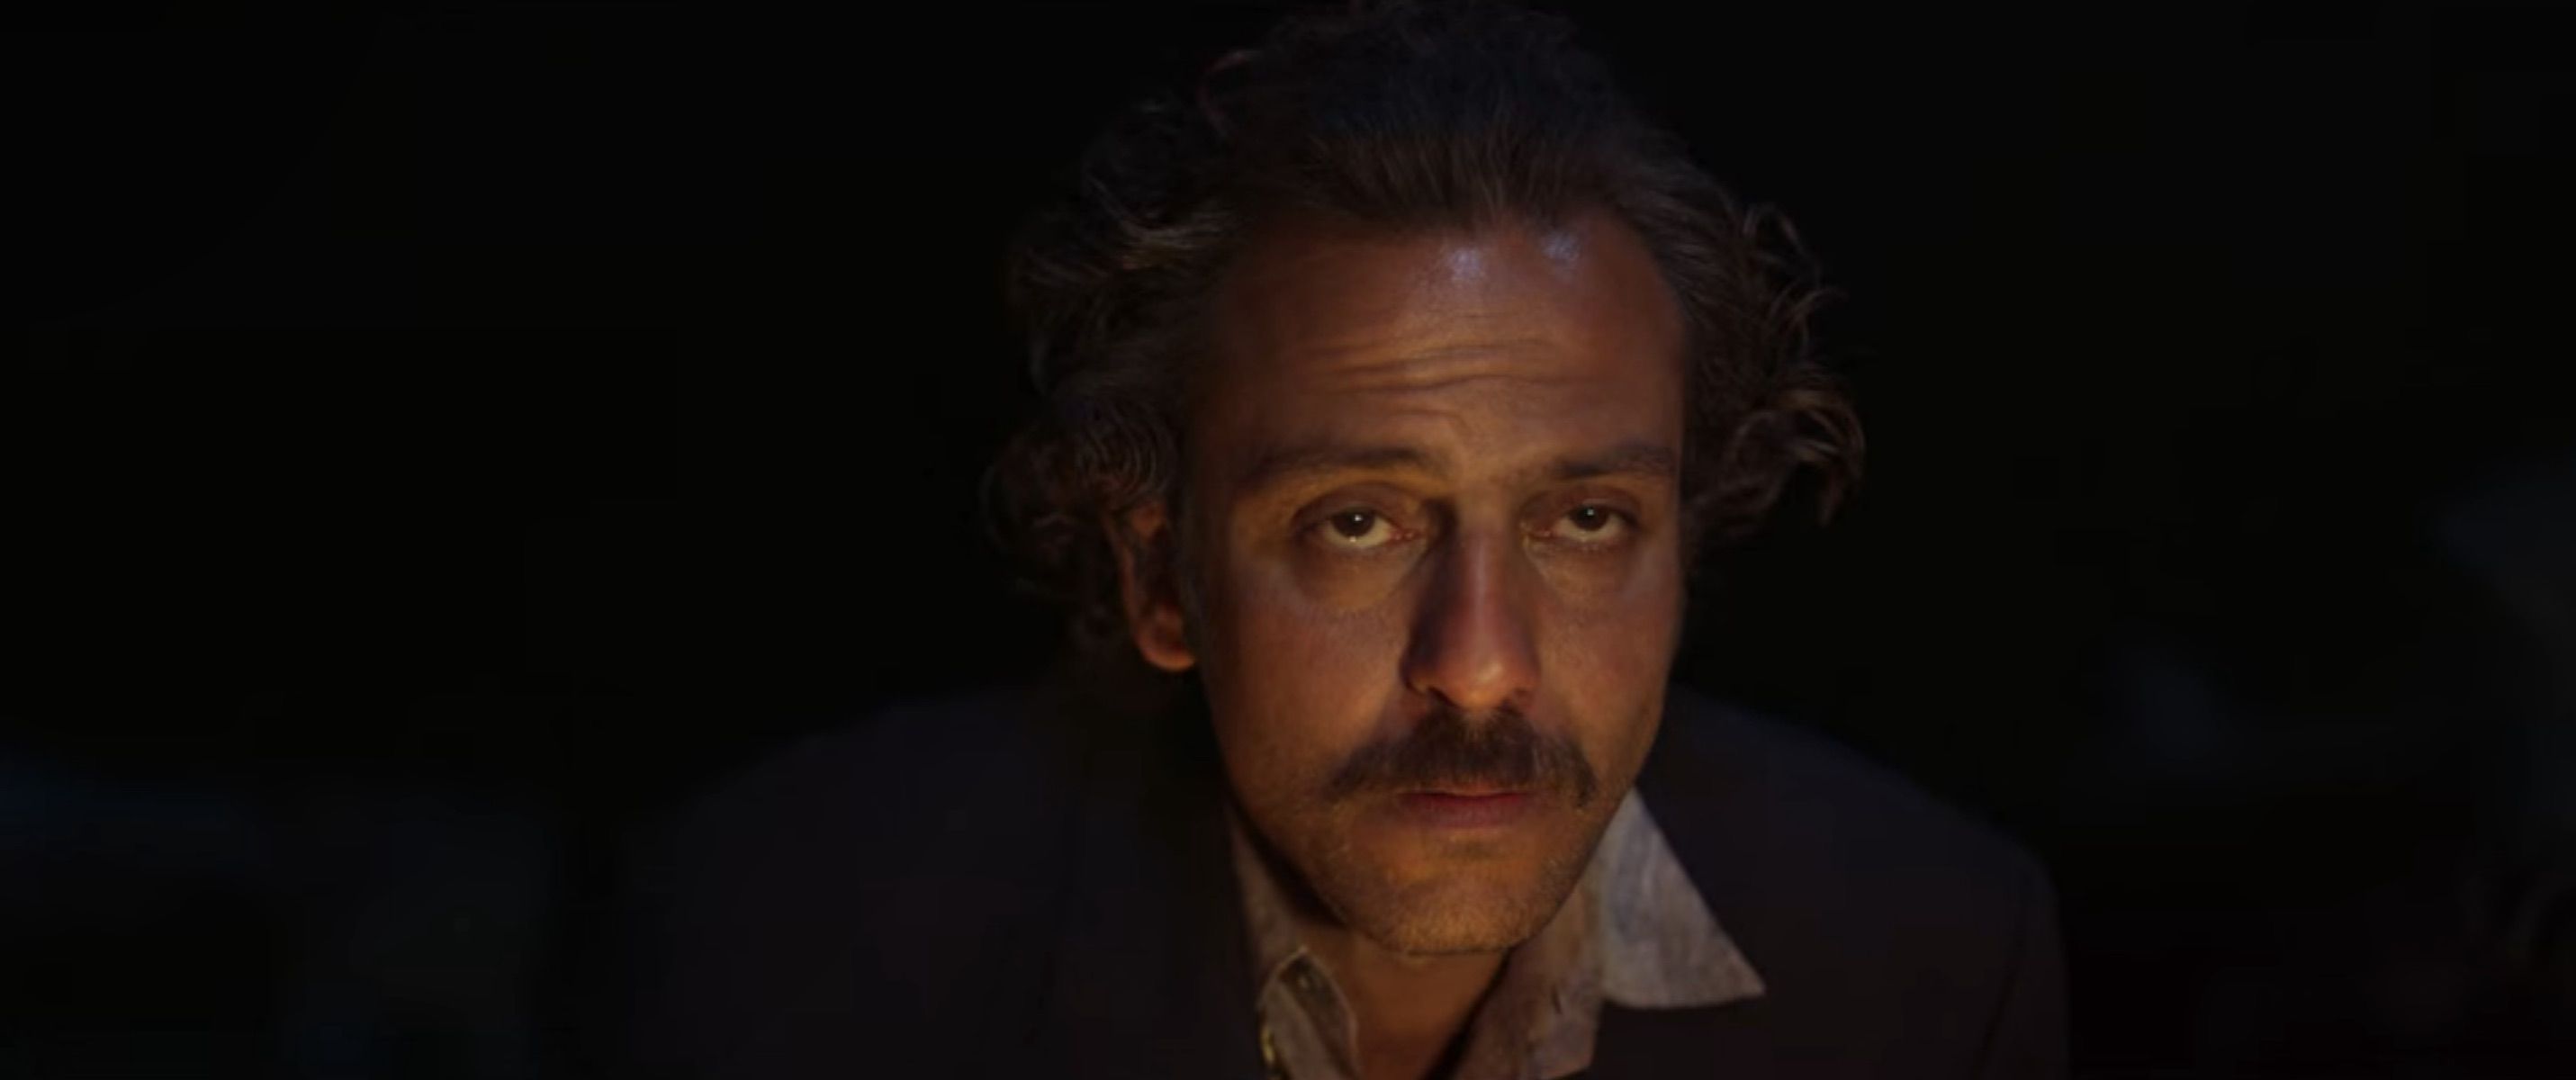 Heartsong Cast on Netflix - Erkan Kolçak Köstendil as Piroz